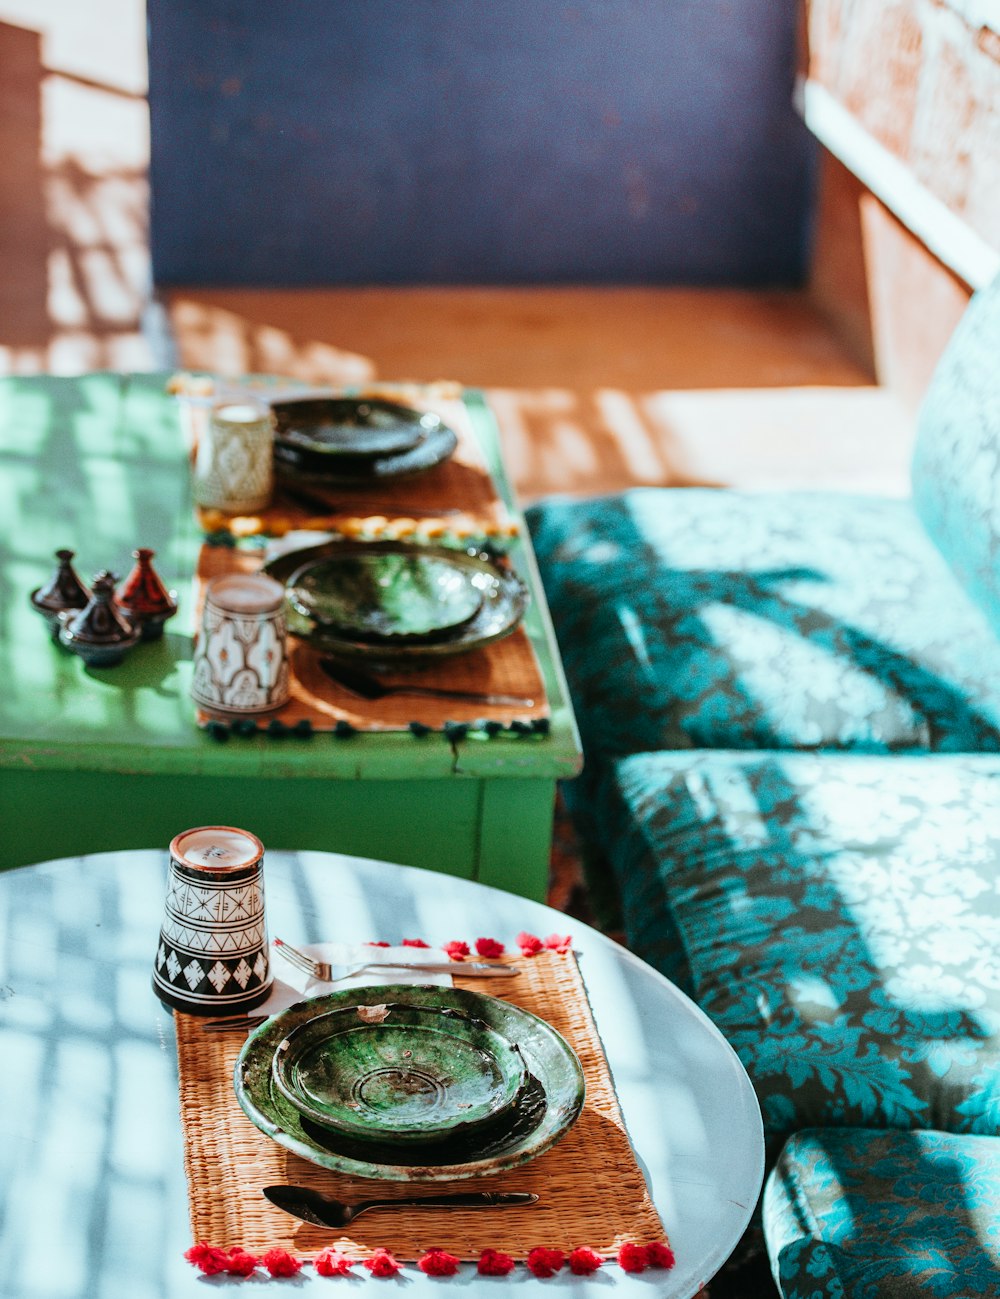 platillos de cerámica verde sobre mesas verdes y verde azulado